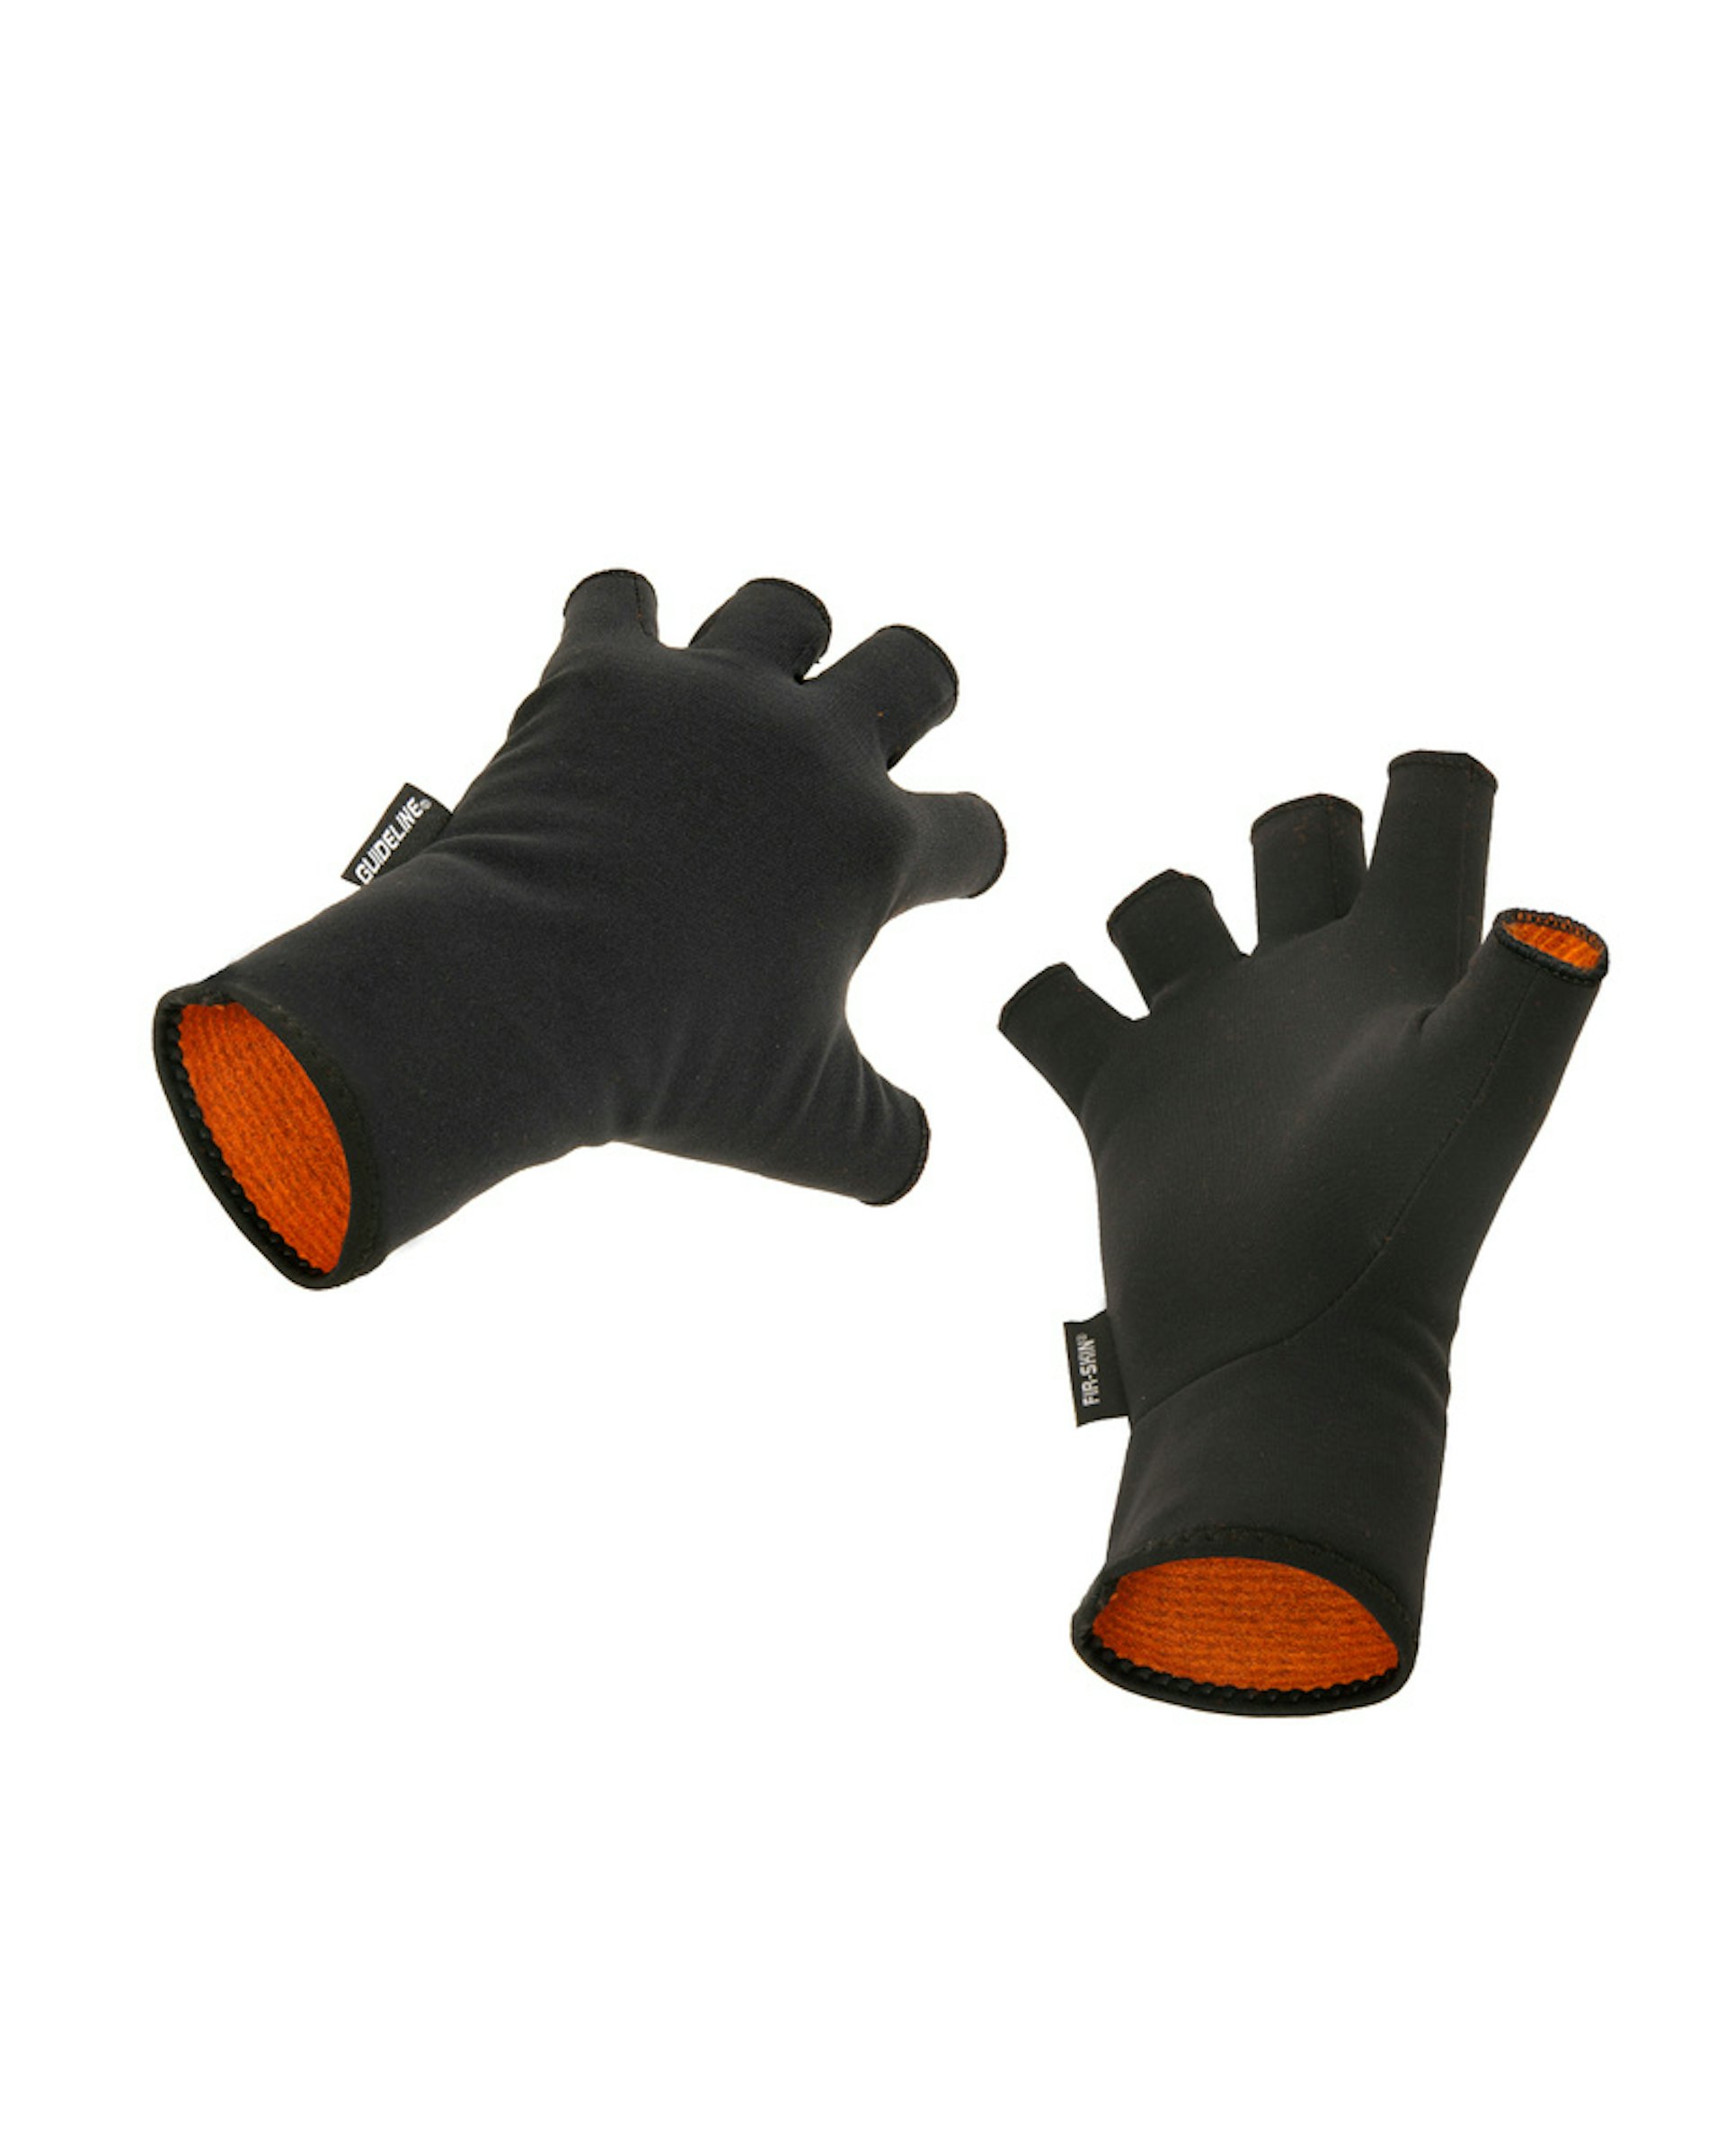 FIR-SKIN CGX Fingerless Gloves L (bilde 1 av 1)